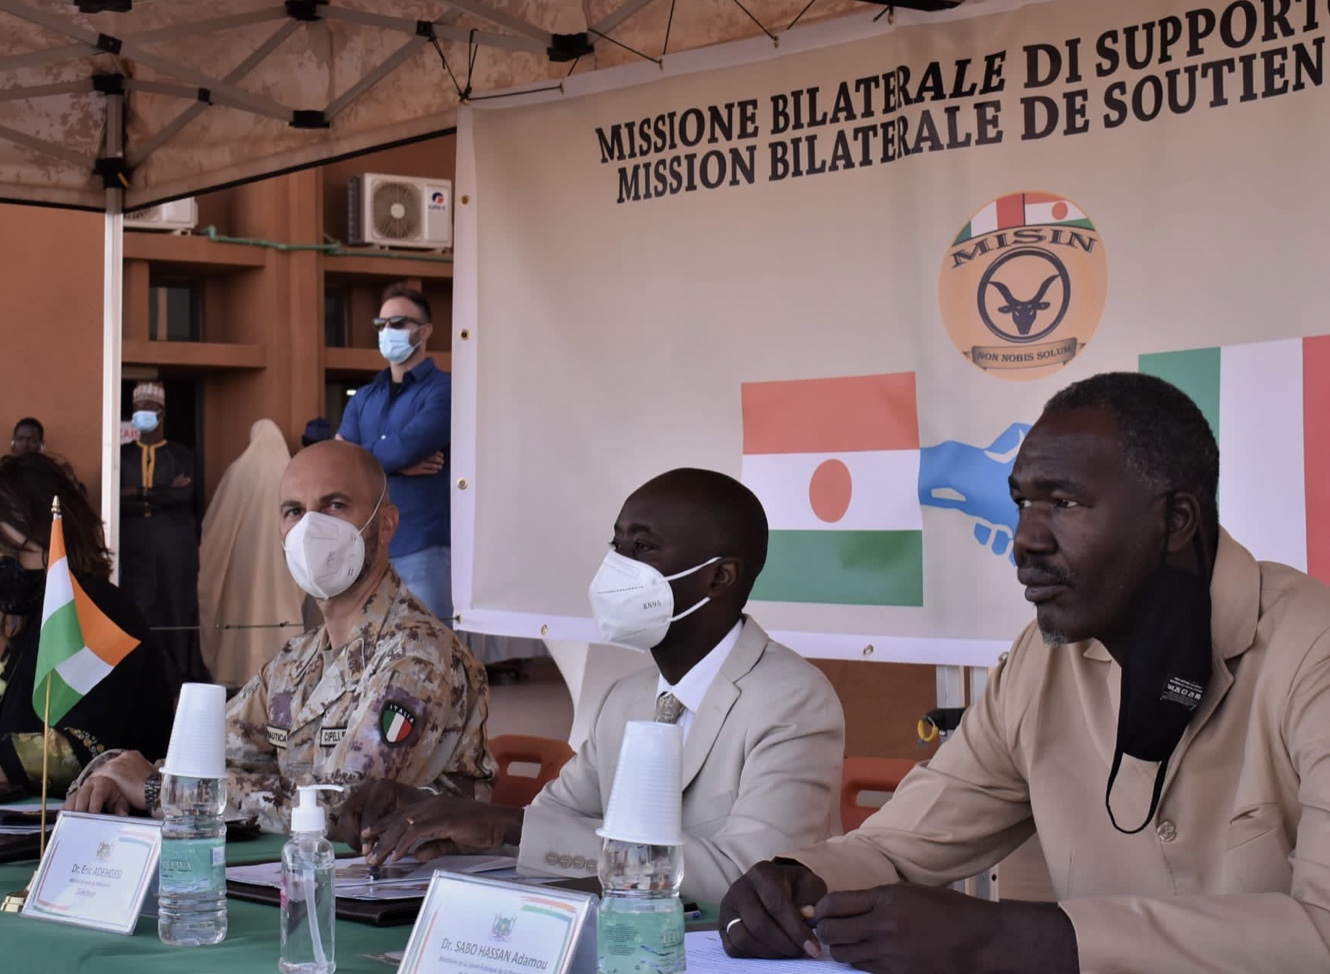 Defense-Maeci در نیجر: MISIN و سفارت ایتالیا تجهیزات پزشکی را به بیمارستان نیامی تحویل می دهند.